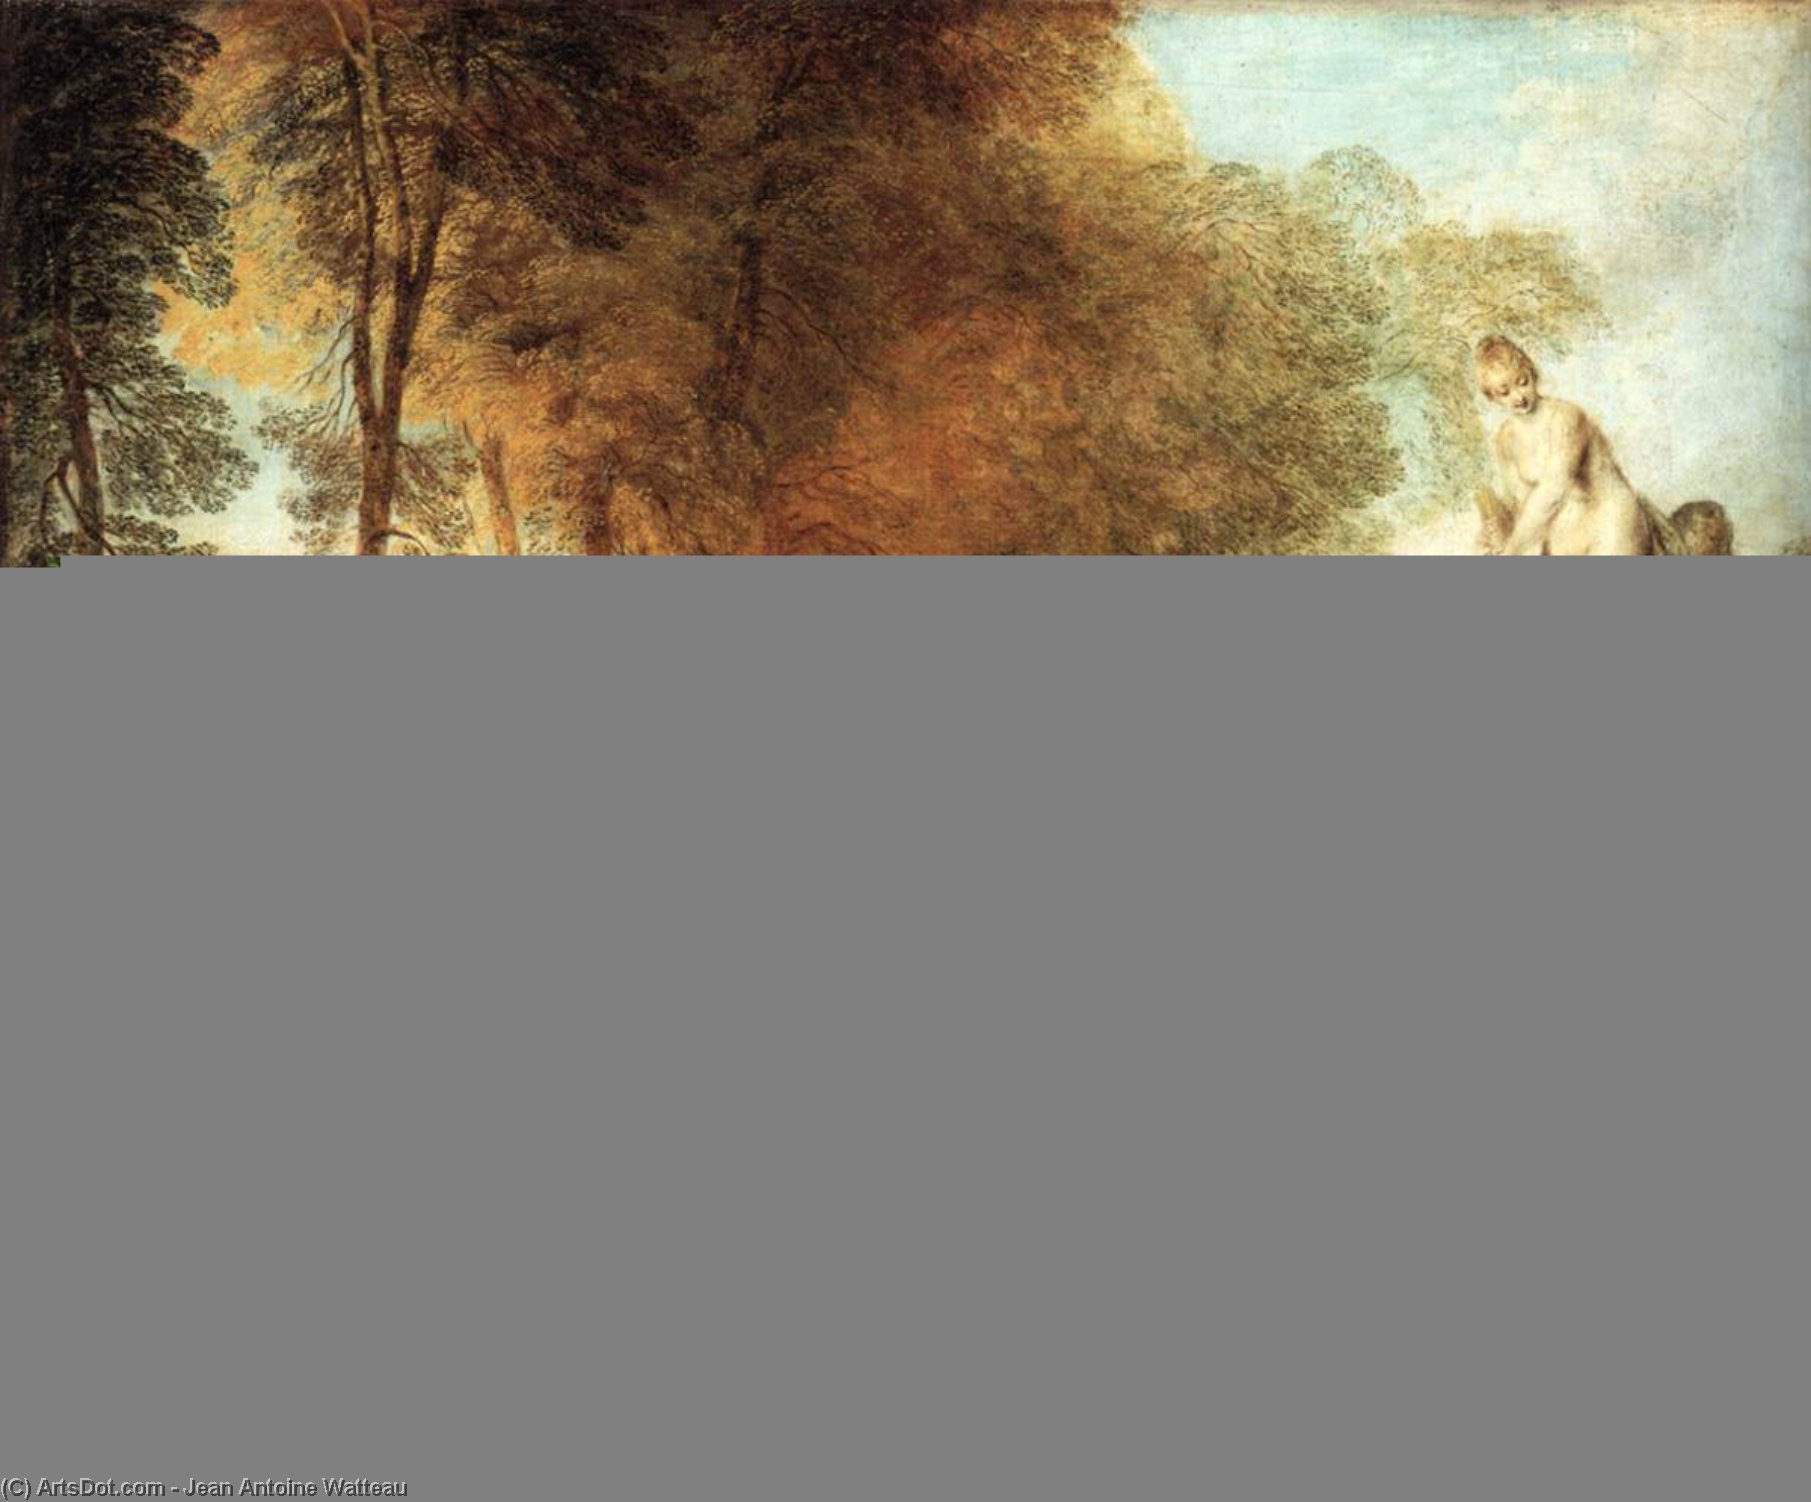 WikiOO.org - Encyclopedia of Fine Arts - Malba, Artwork Jean Antoine Watteau - The Festival of Love